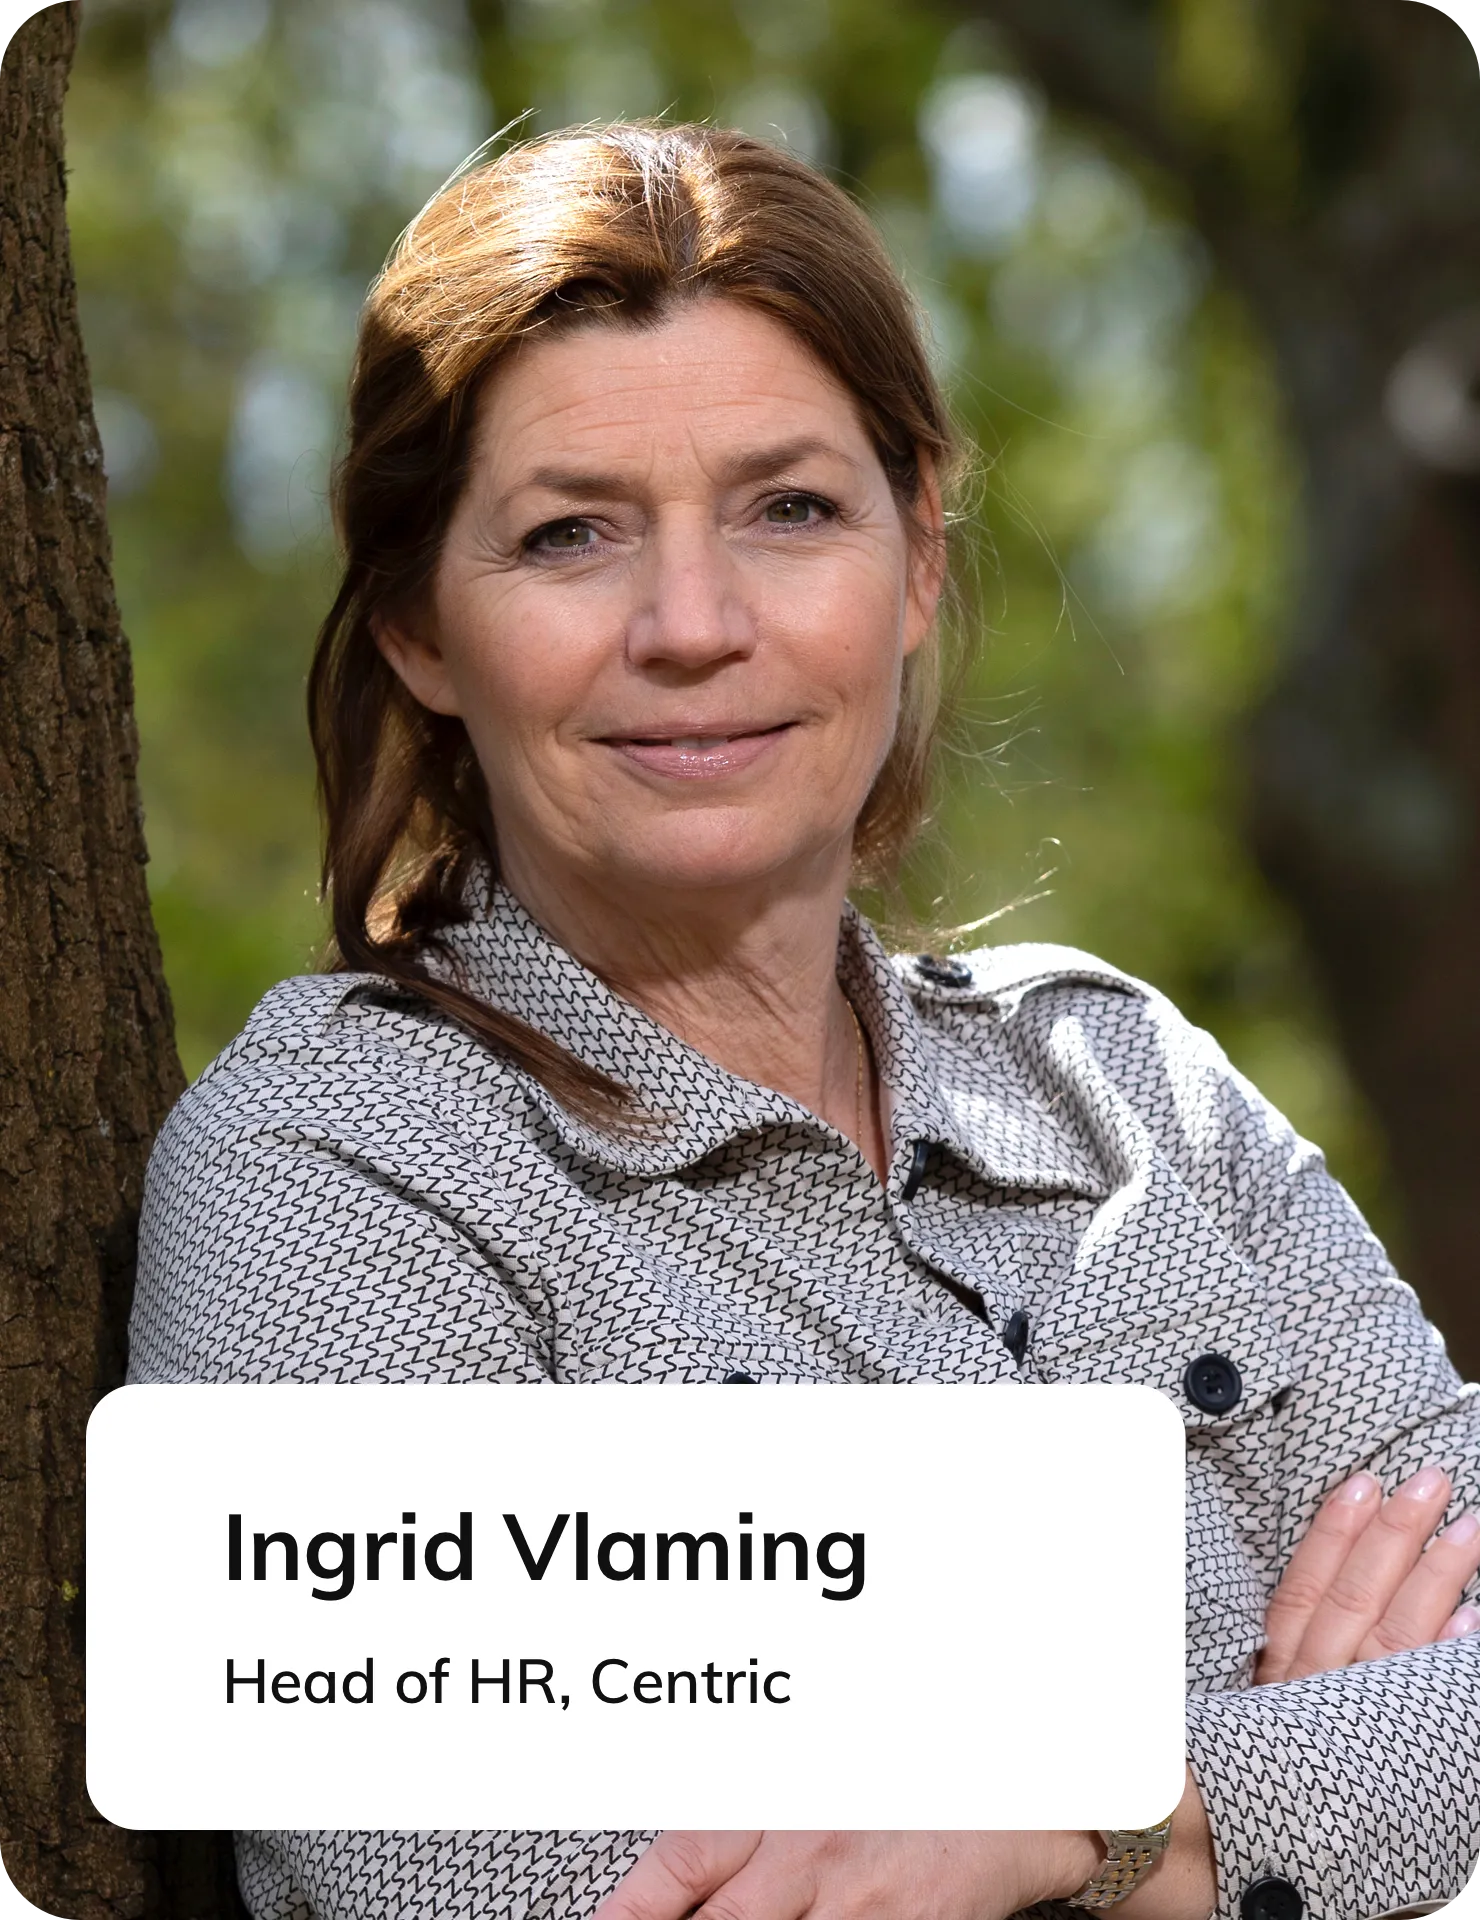 231121 - [EN+NL] - Appical for Mid-Size Enterprises - Ingrid Vlaming